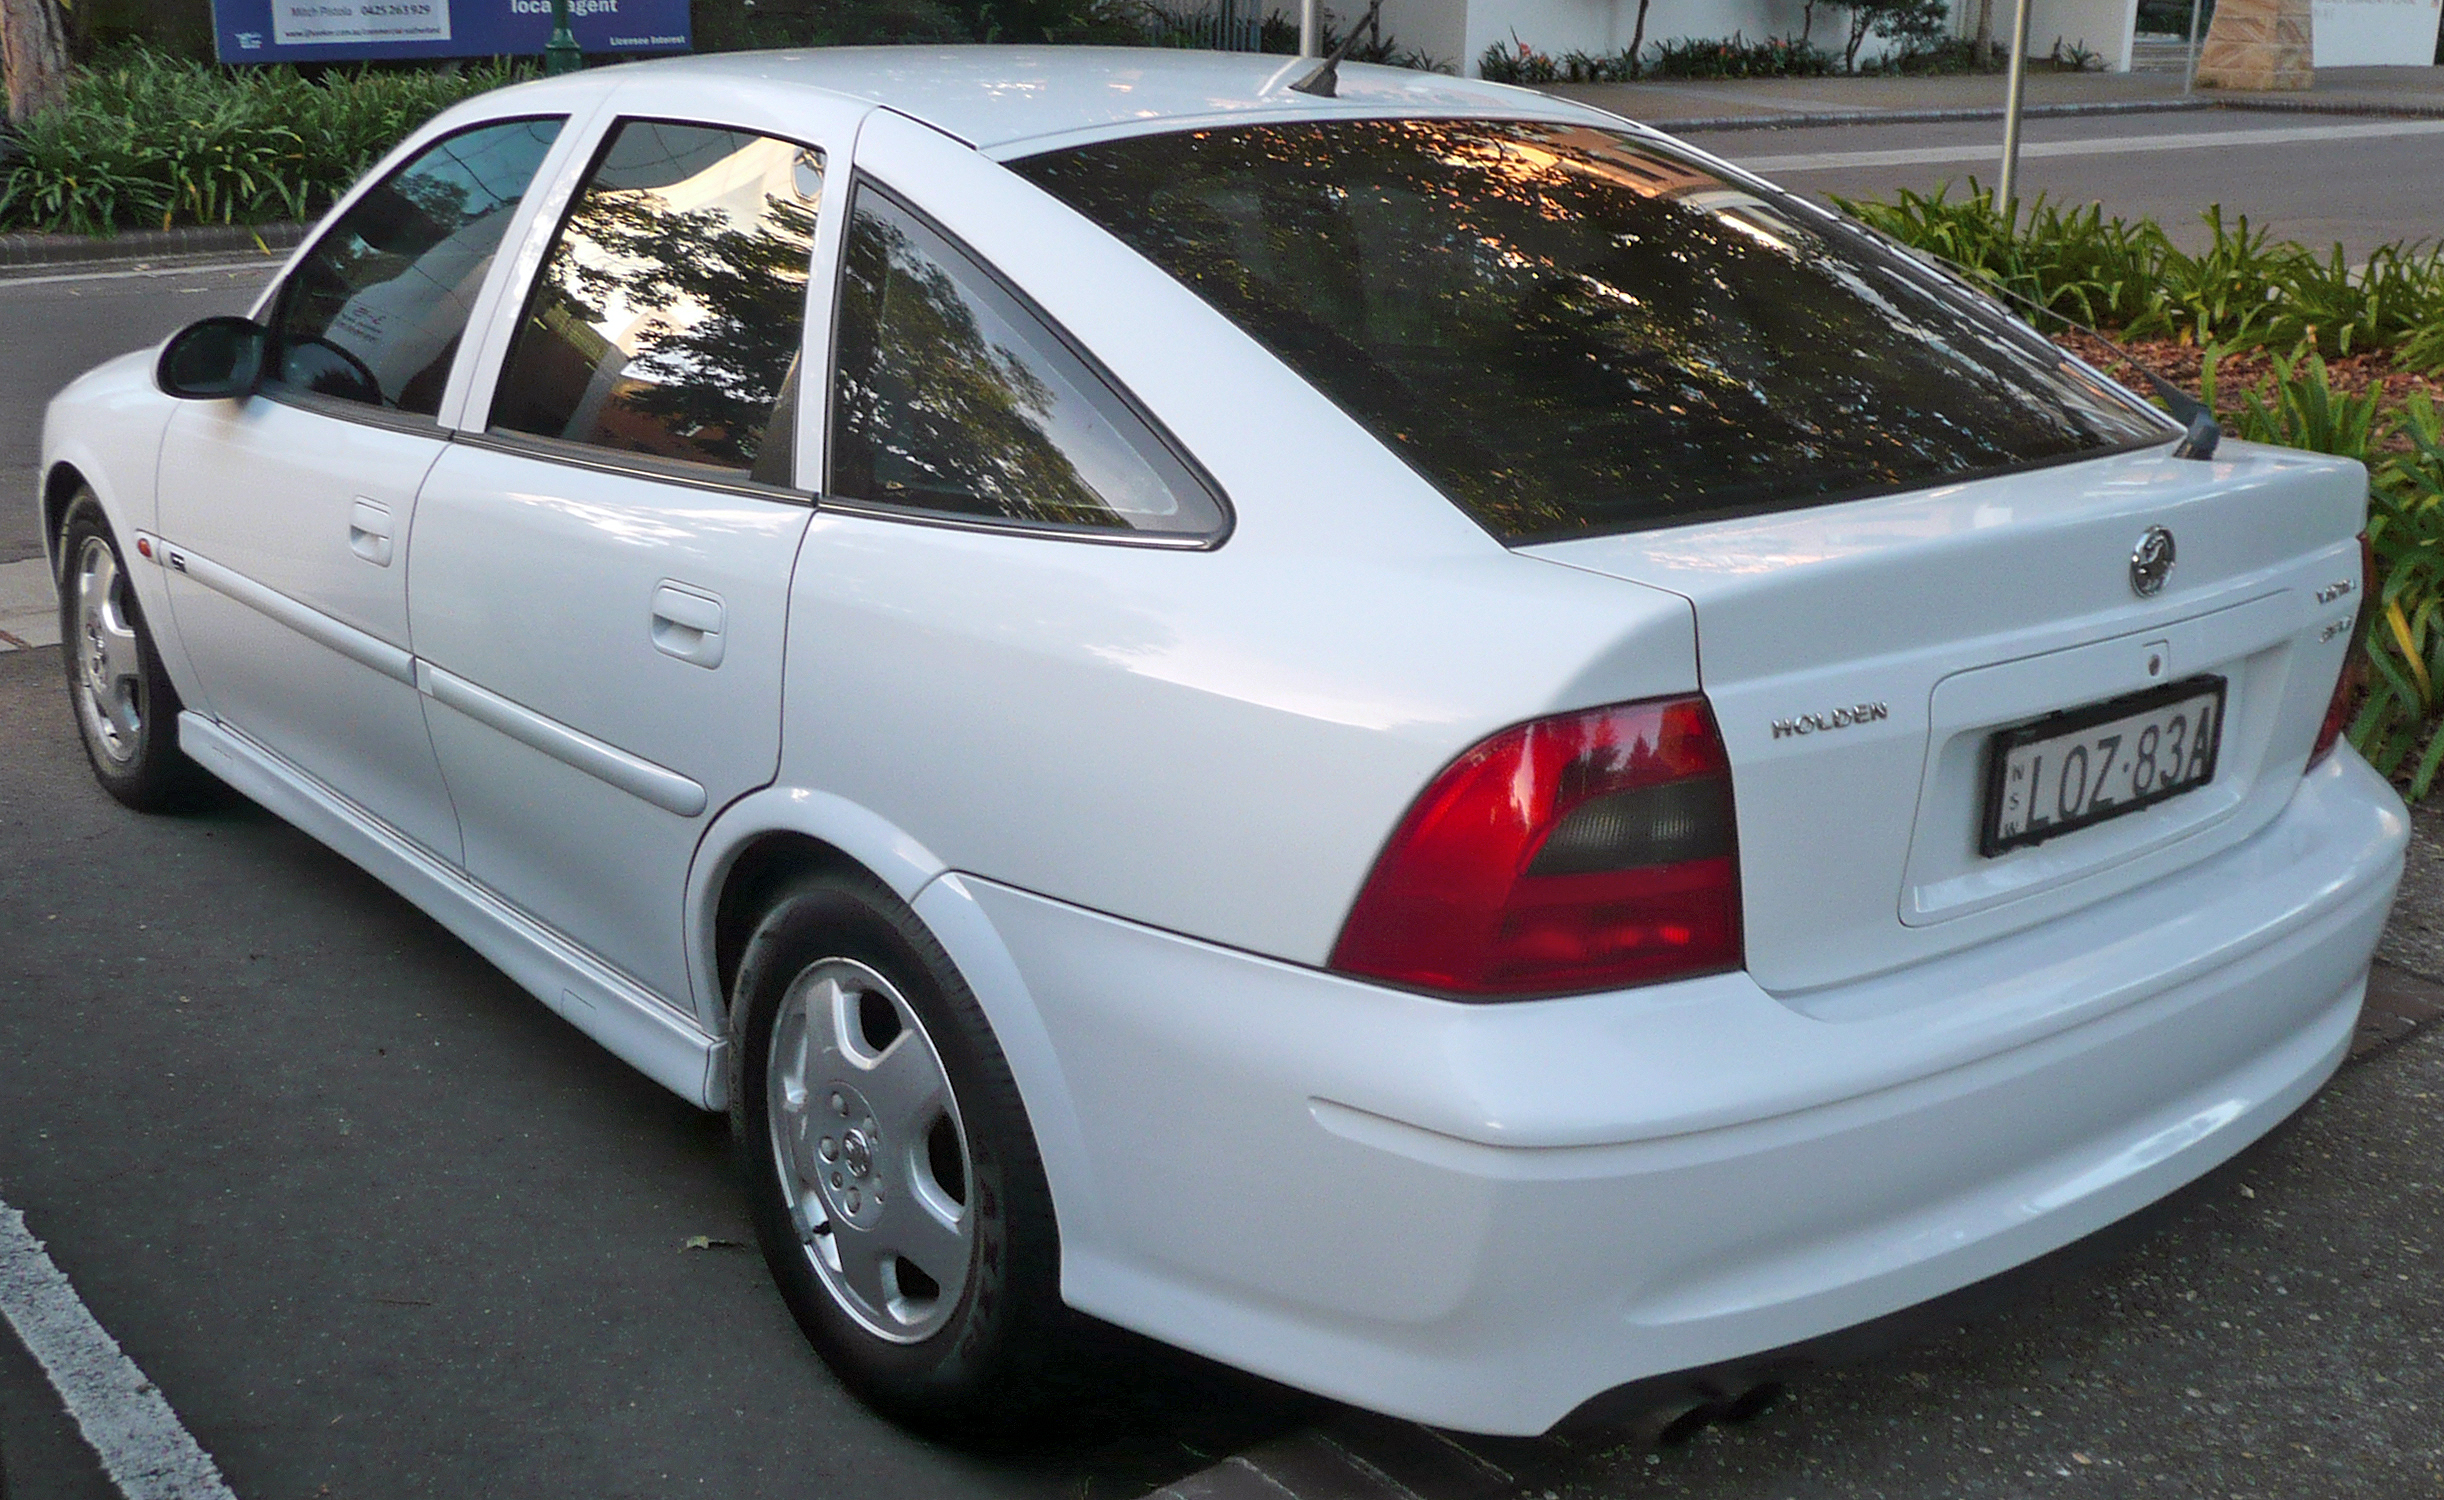 1999â€“2000 Holden JS II Vectra CD hatchback (facelift; Australia)